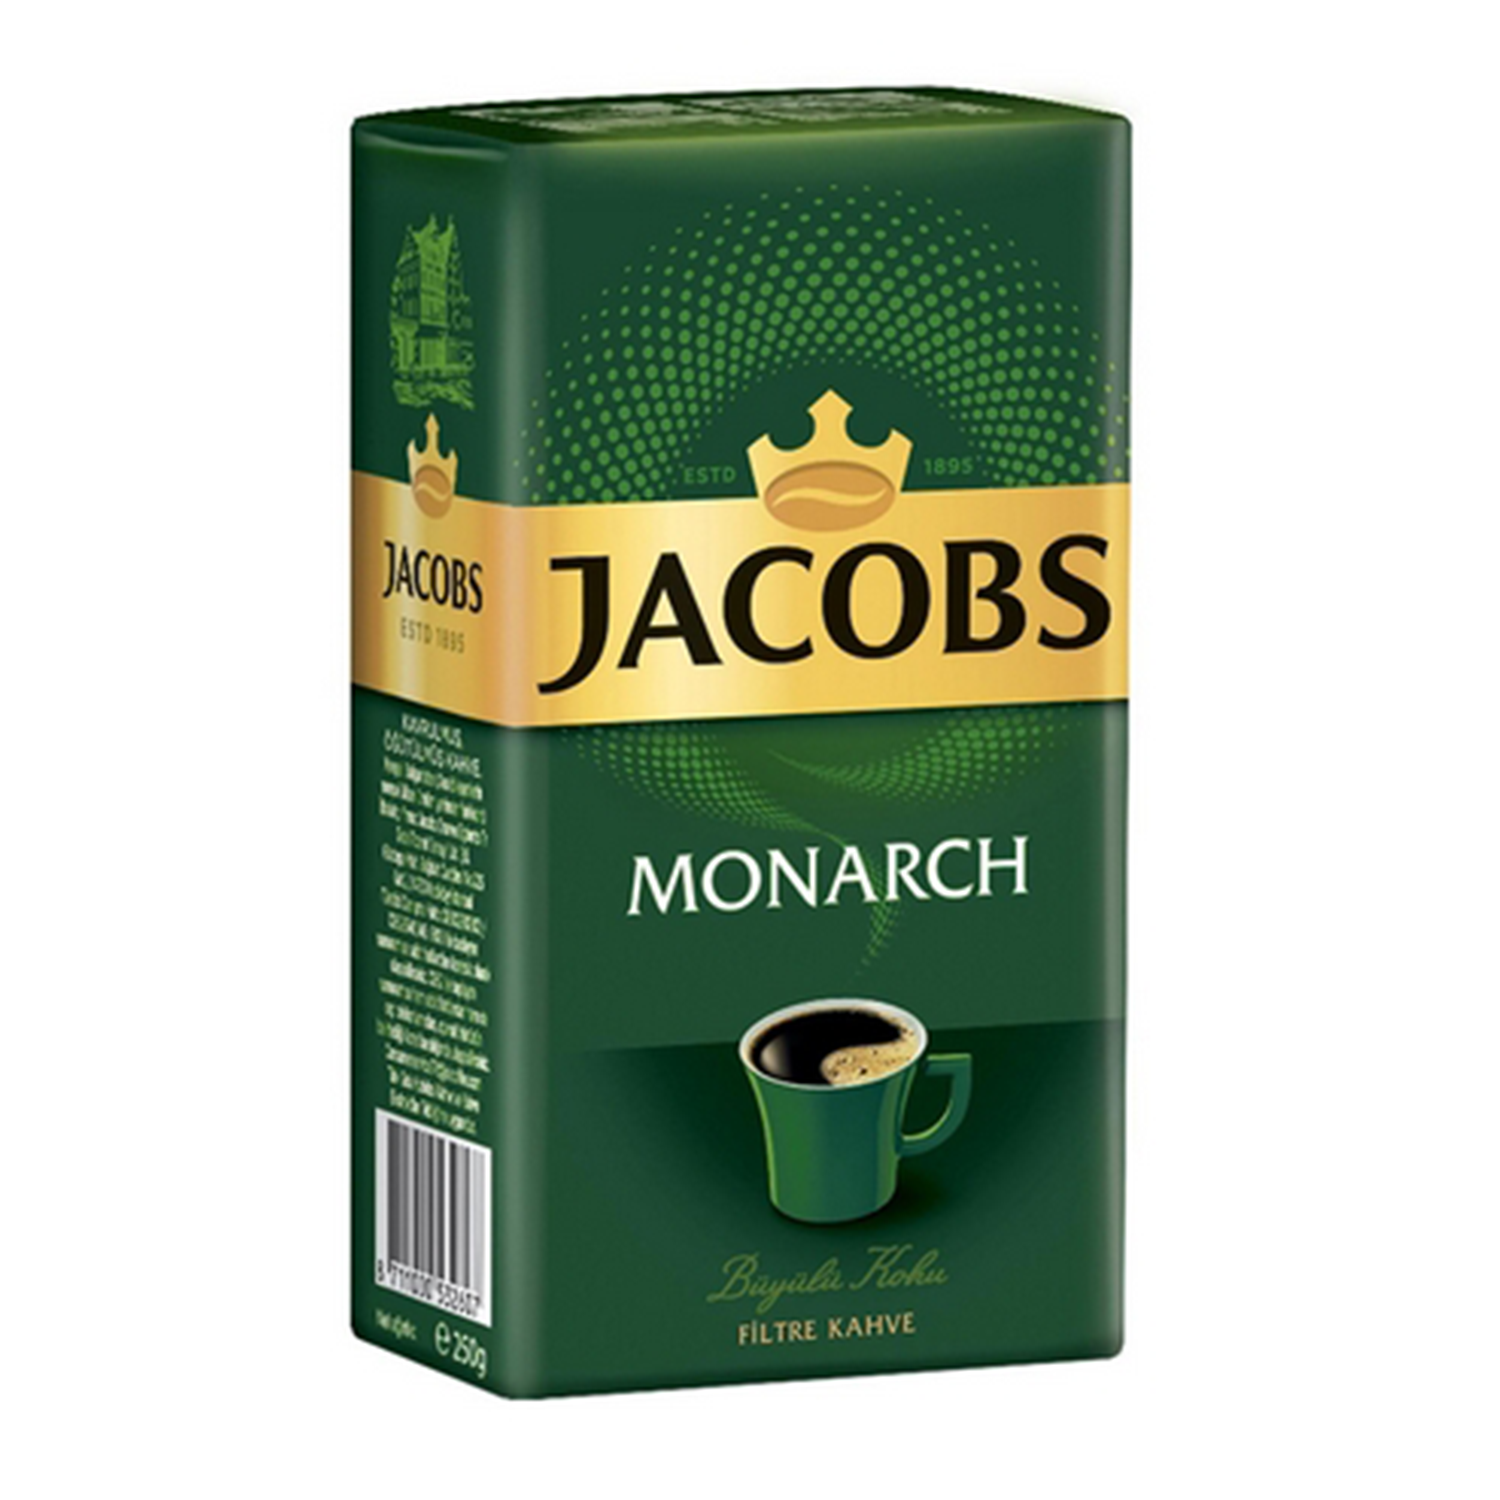 Jacobs Monarch Filtre Kahve 250 GR